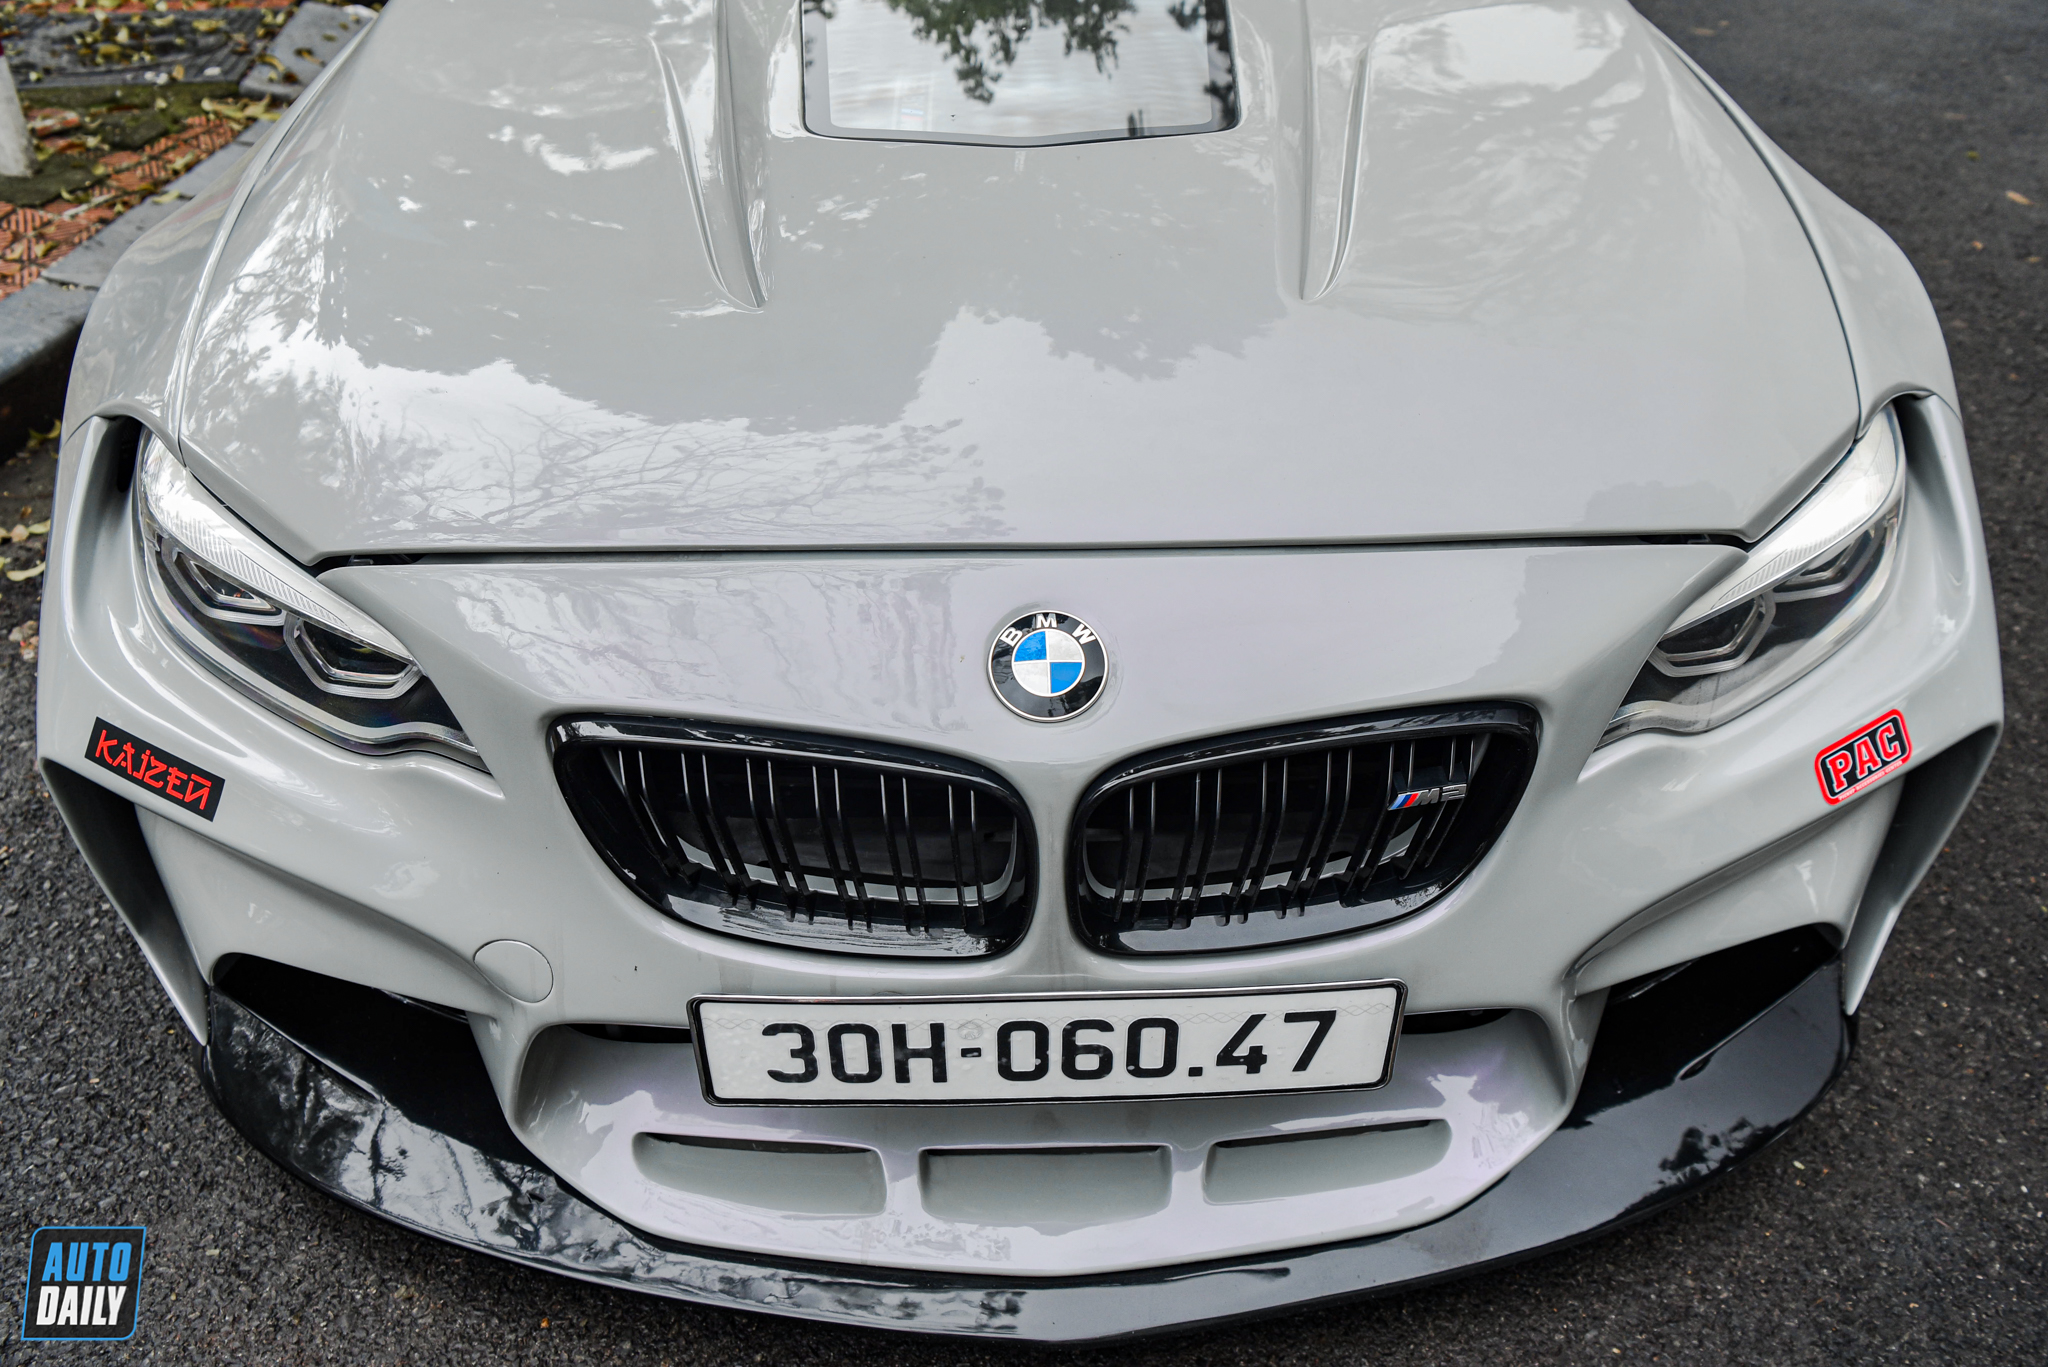 Chiêm ngưỡng BMW M2 độ KHỦNG của dân chơi Drift Hà Nội adt-8862.jpg